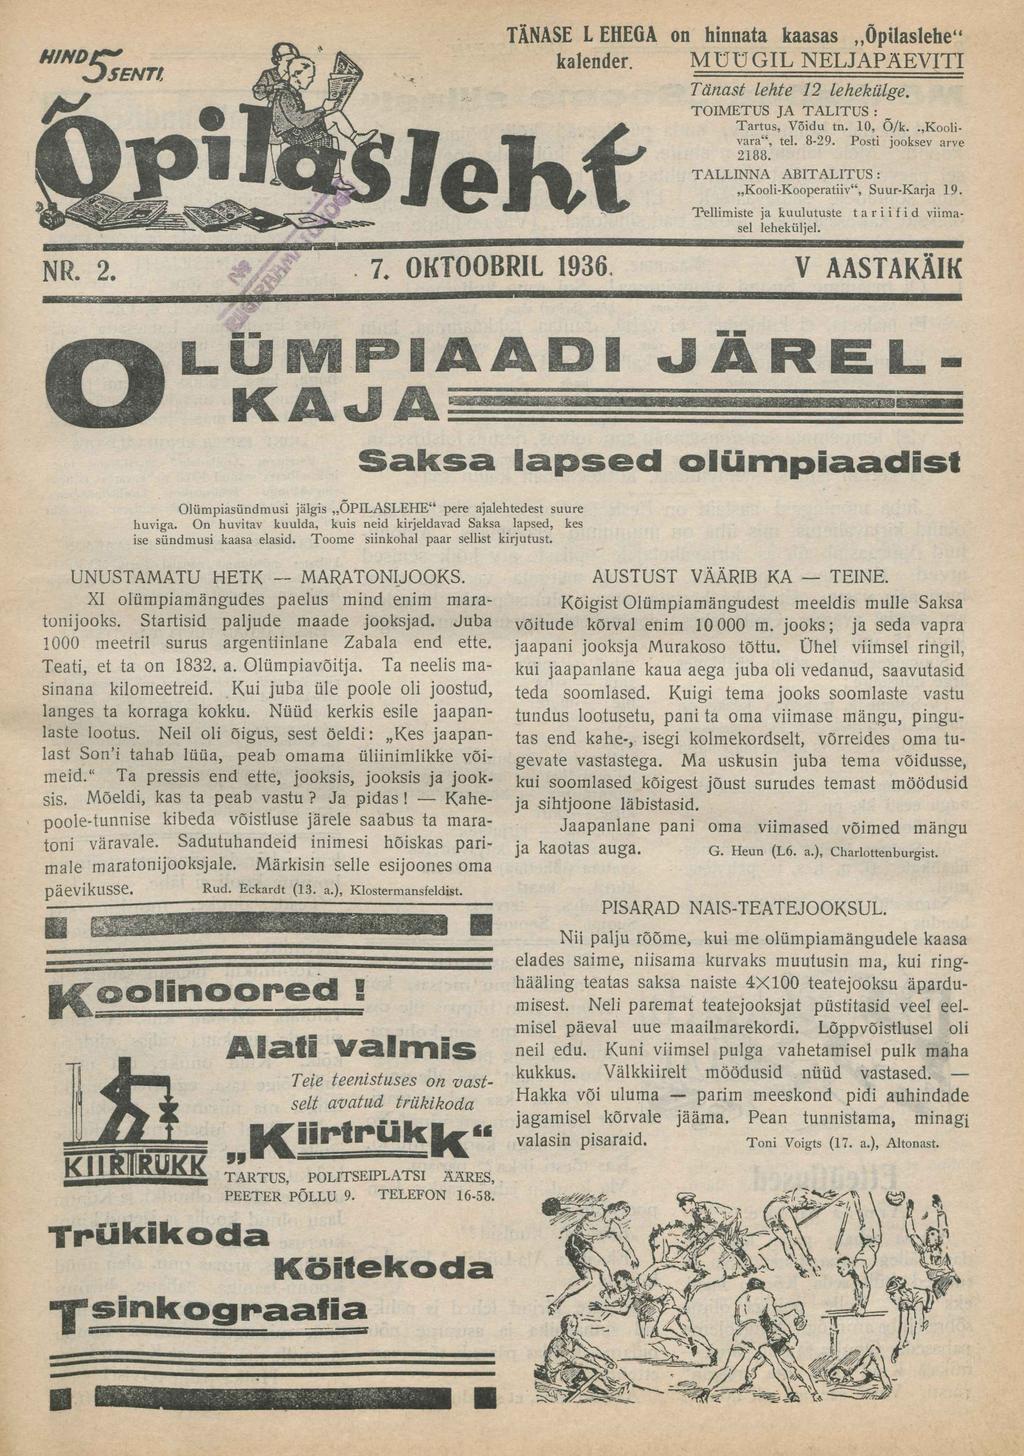 NR. 2. 7. OKTOOBRIL 1936, Jdž-' LUMPIAADI.y-;: -' KAJA ' Olümpiasündmusi jälgis ÕPILASLEHE pere ajalehtedest suure huviga.